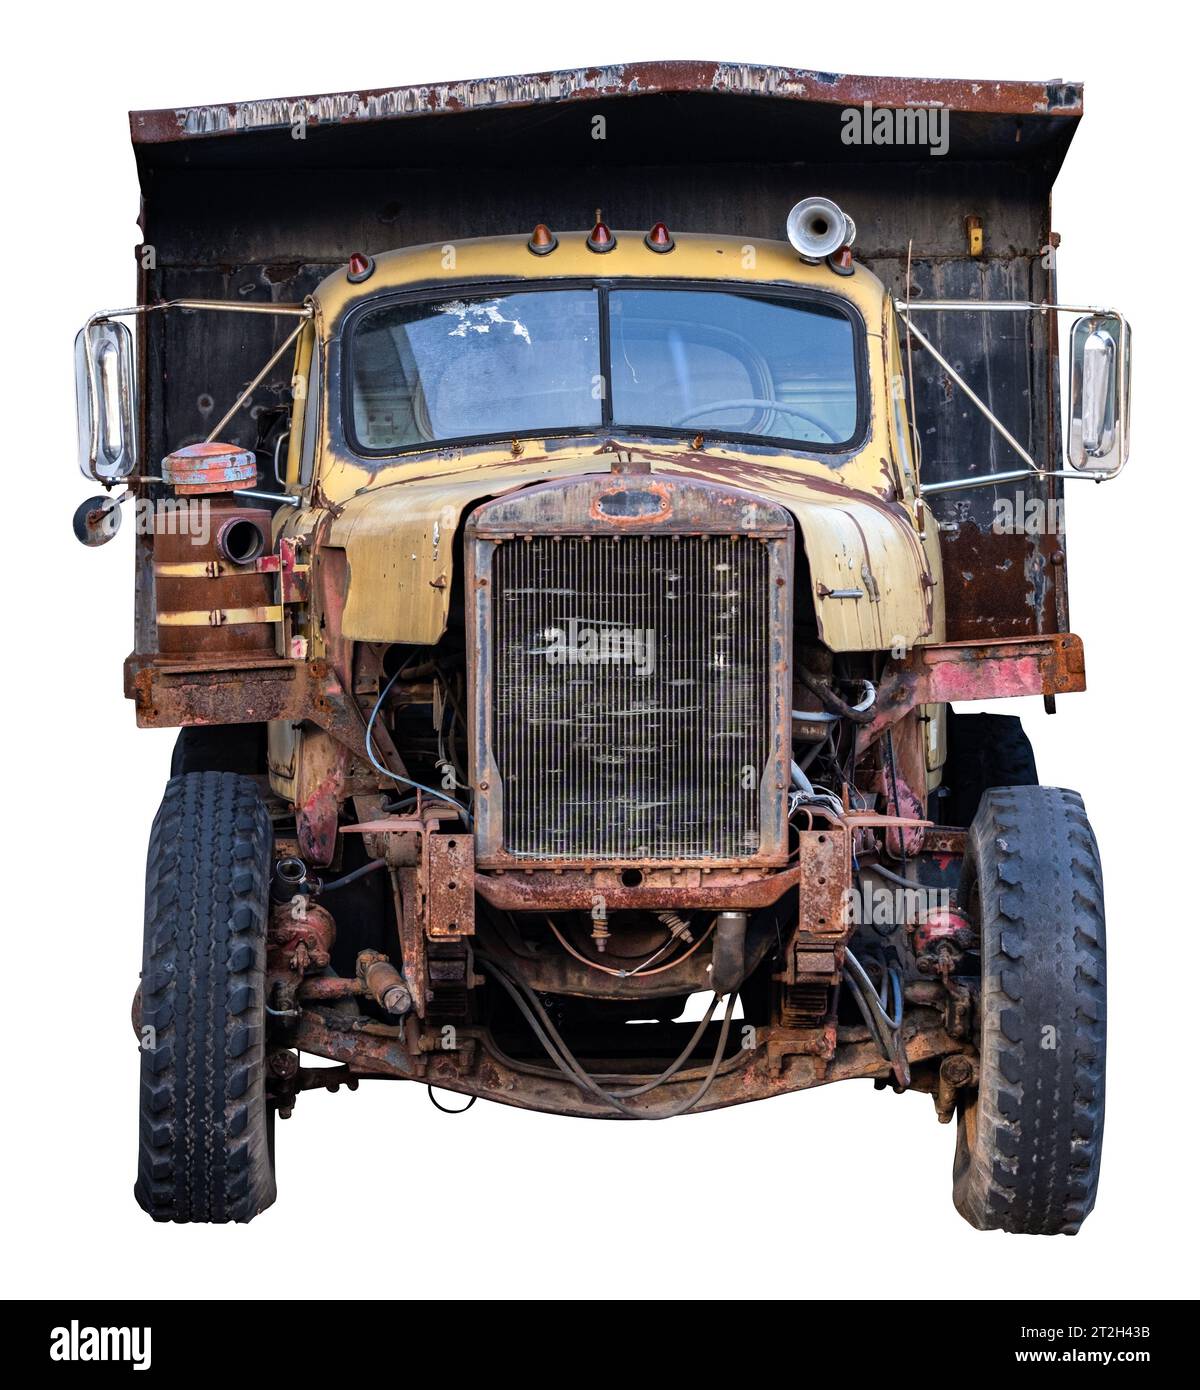 Vue de face d'Un vieux camion à benne basculante rouillée, isolé sur Un fond blanc Banque D'Images